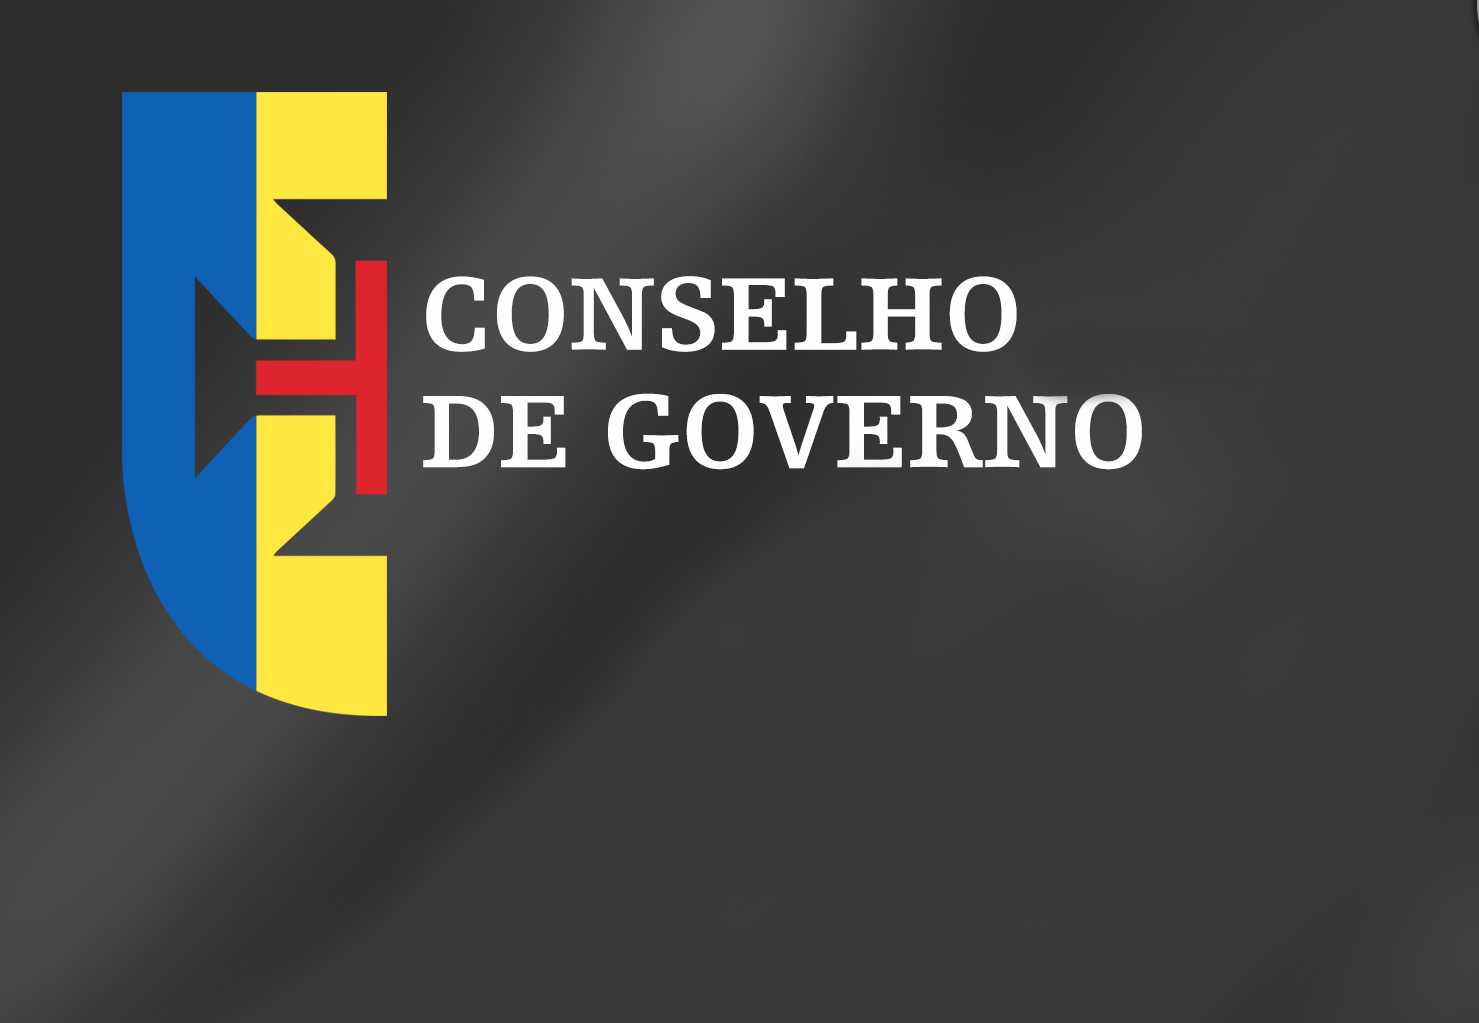  Conclusões Conselho de Governo - 18 de setembro de 2019